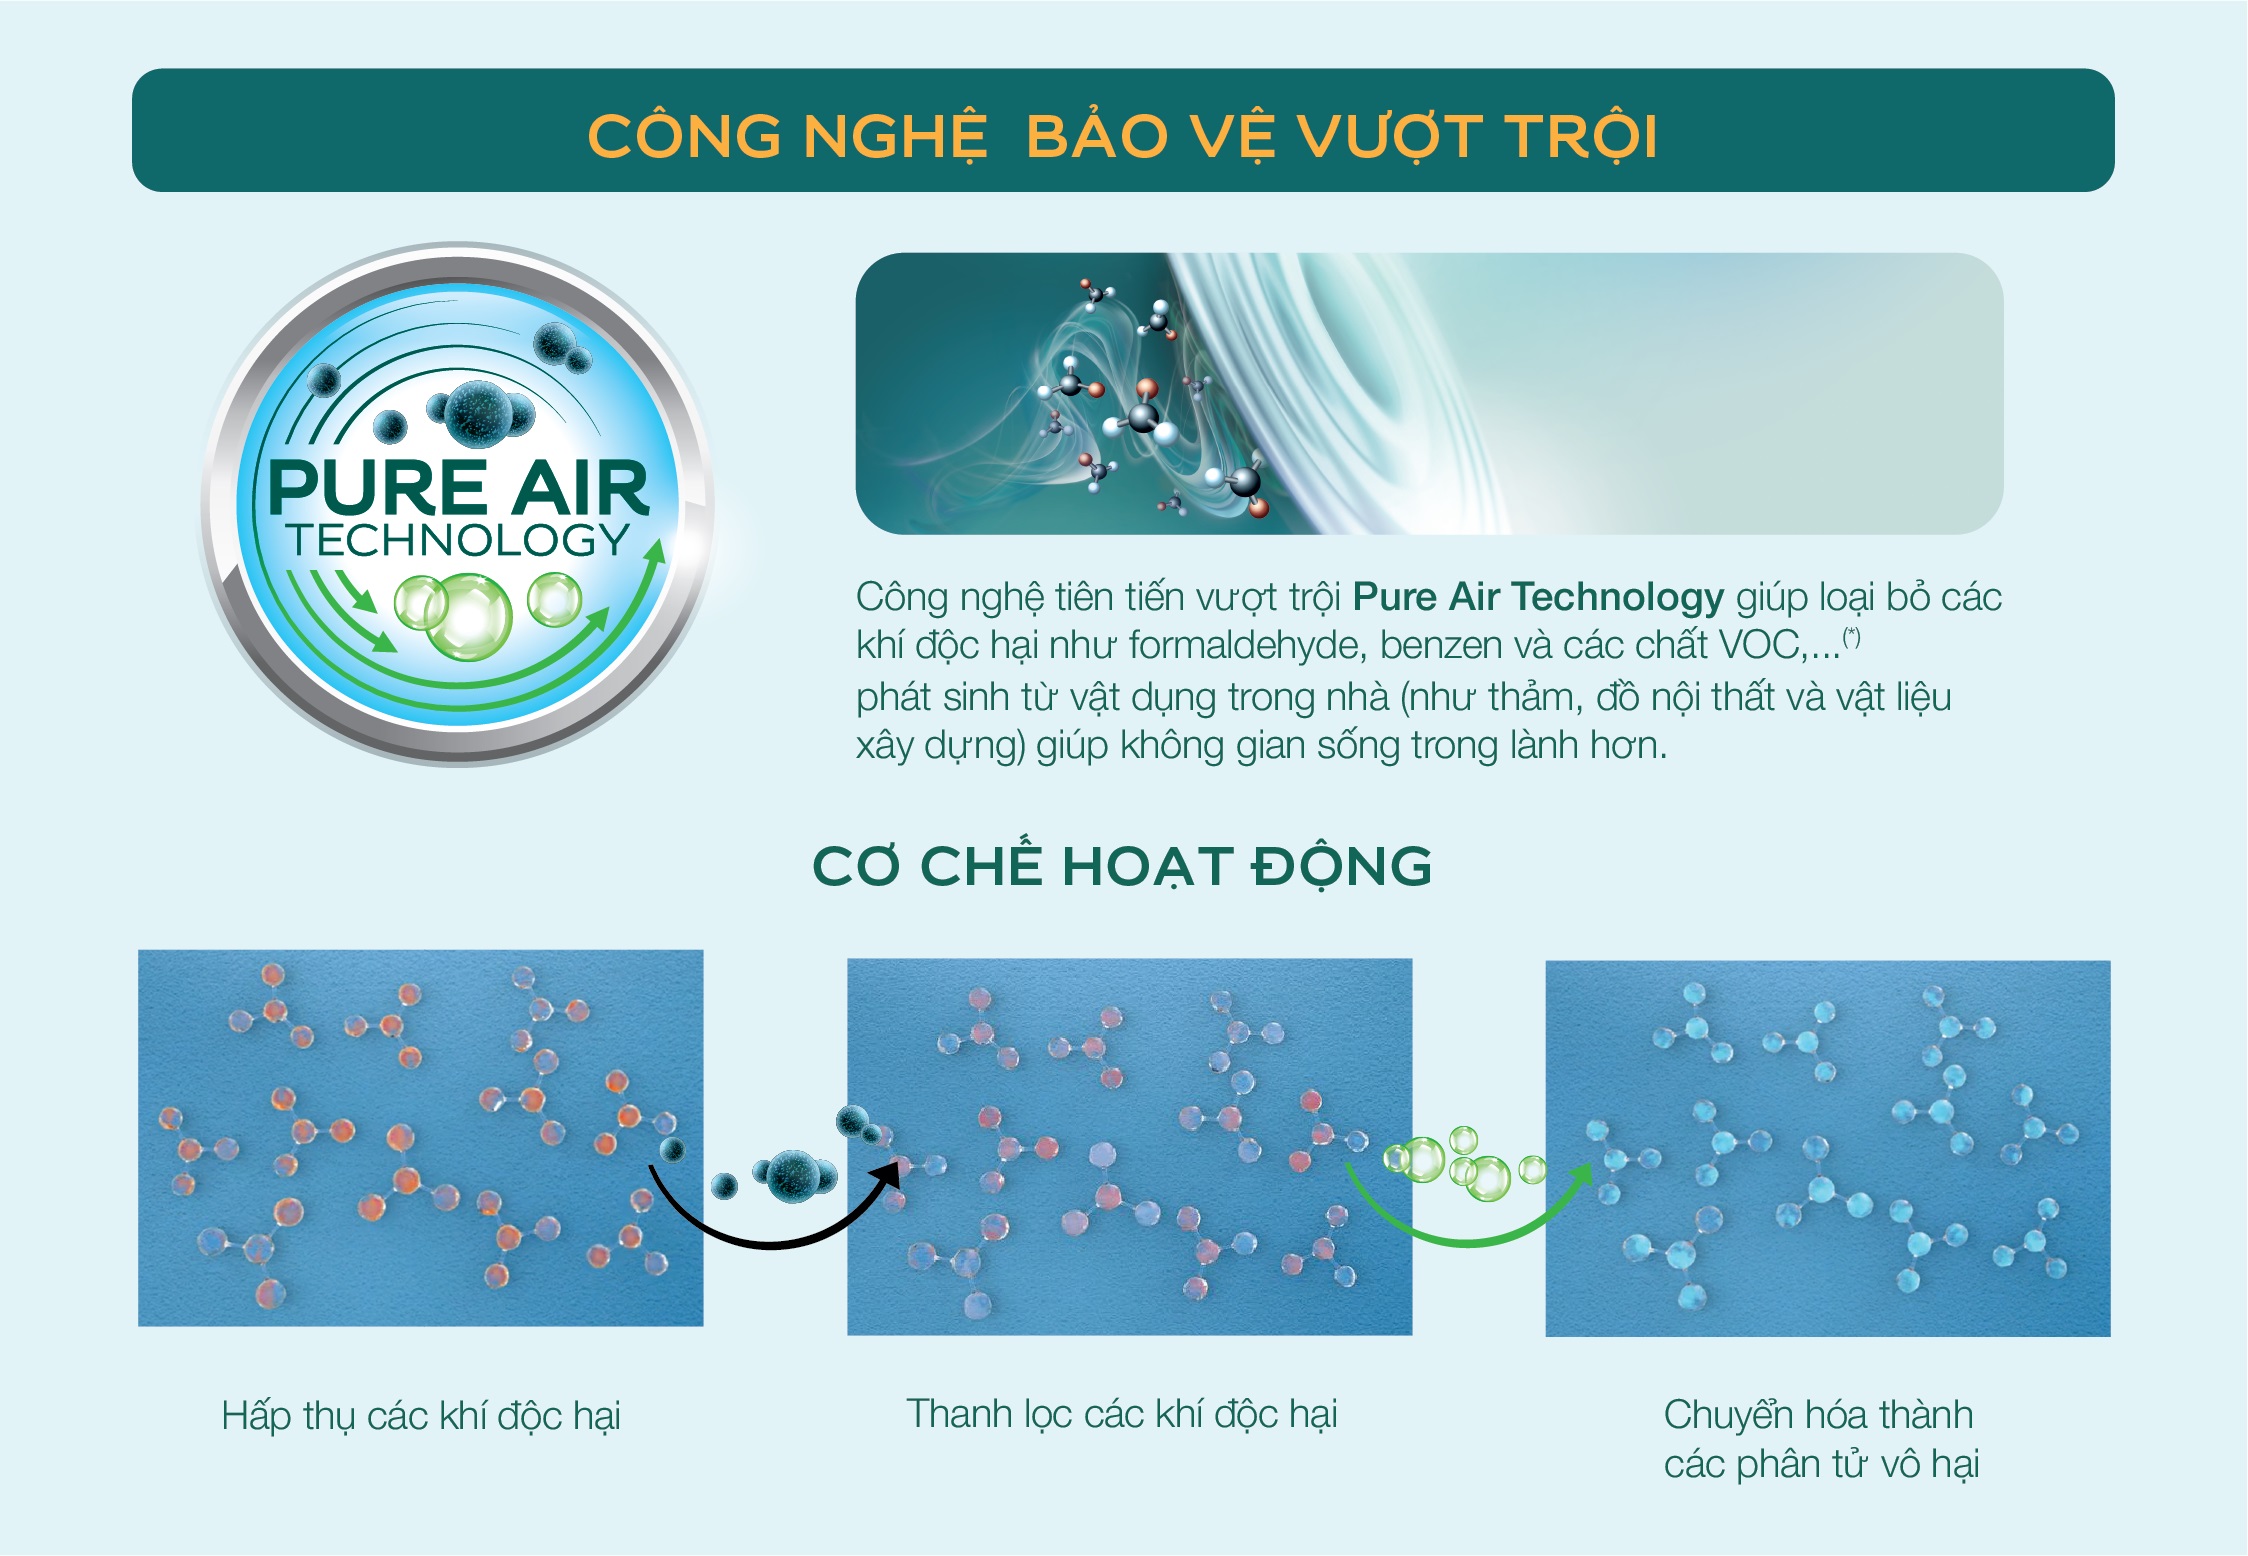 Cơ chế hoạt động ưu việt của công nghệ Pure Air Technology từ Air Clean giúp không khí trong nhà trong lành hơn